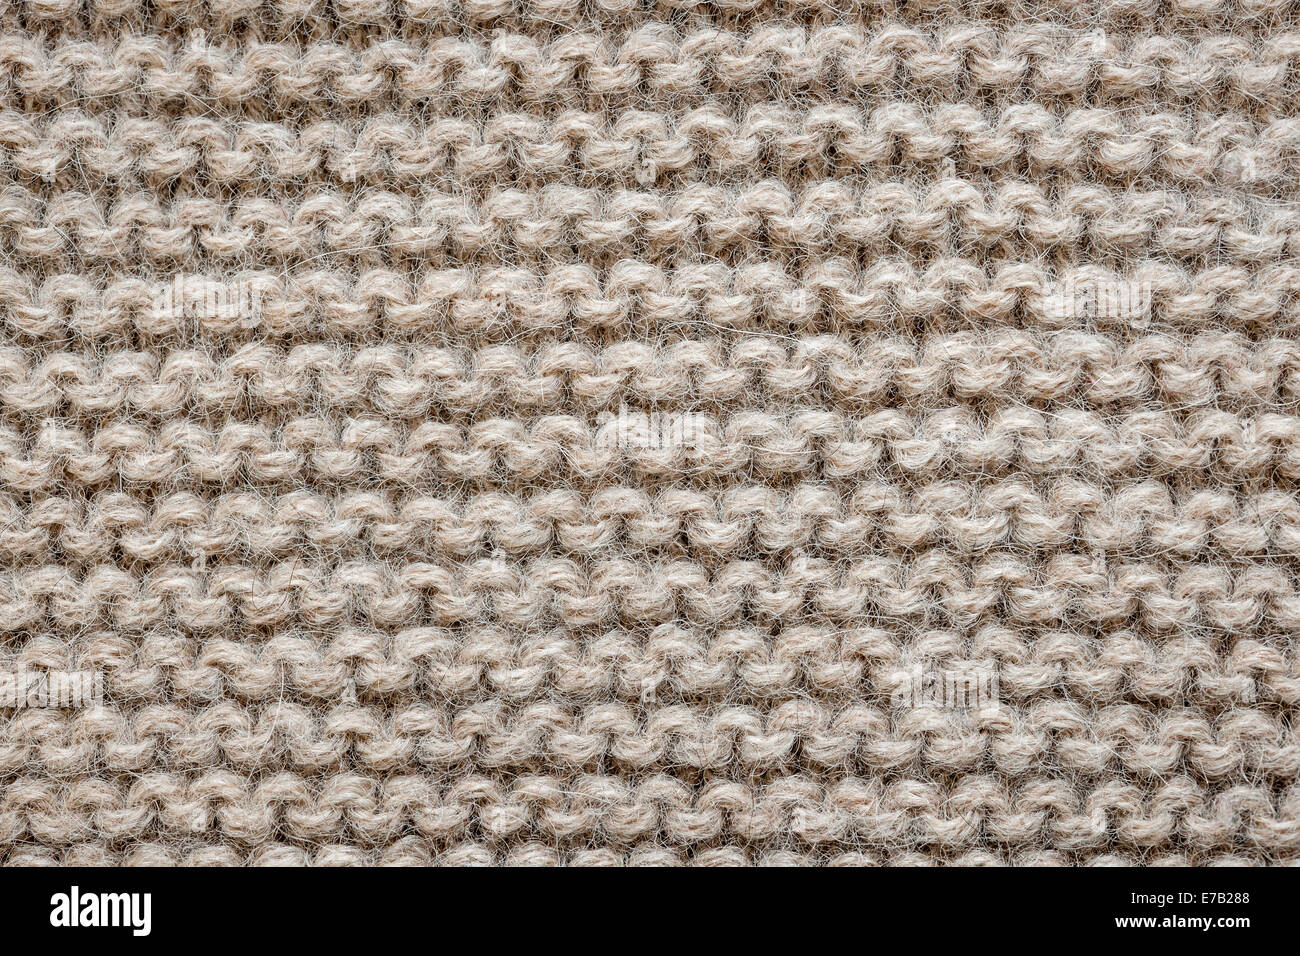 Gestrickte Textur der ungefärbten natürliche braune Alpakawolle Gestrick mit Strumpfband Stichbild als Hintergrund Stockfoto